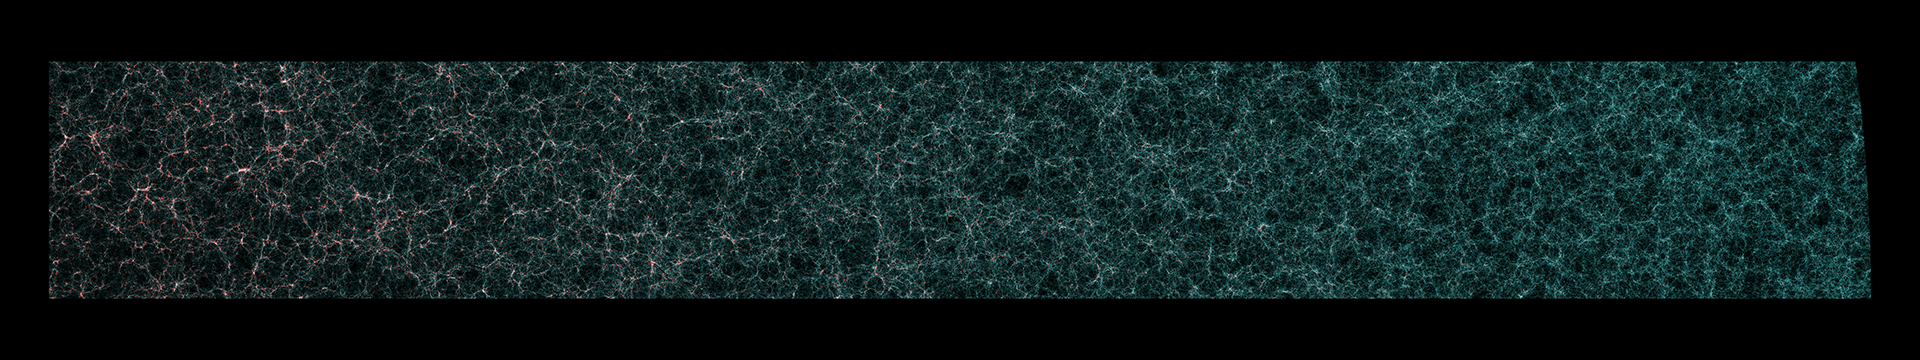 Les galaxies centrales, peuplant le centre des halos de matière noire, sont en bleu. Les galaxies satellites, dans les halos les plus massifs, dans les pics de densité les plus élevés de la matière noire sous-jacente, sont indiquées en rouge. Le temps s'écoule de droite à gauche sur cette image. [Euclid/ESA - J. Carretero (PIC), P. Tallada (PIC), S. Serrano (ICE) and the Euclid Consortium Cosmological Simulations SWG]